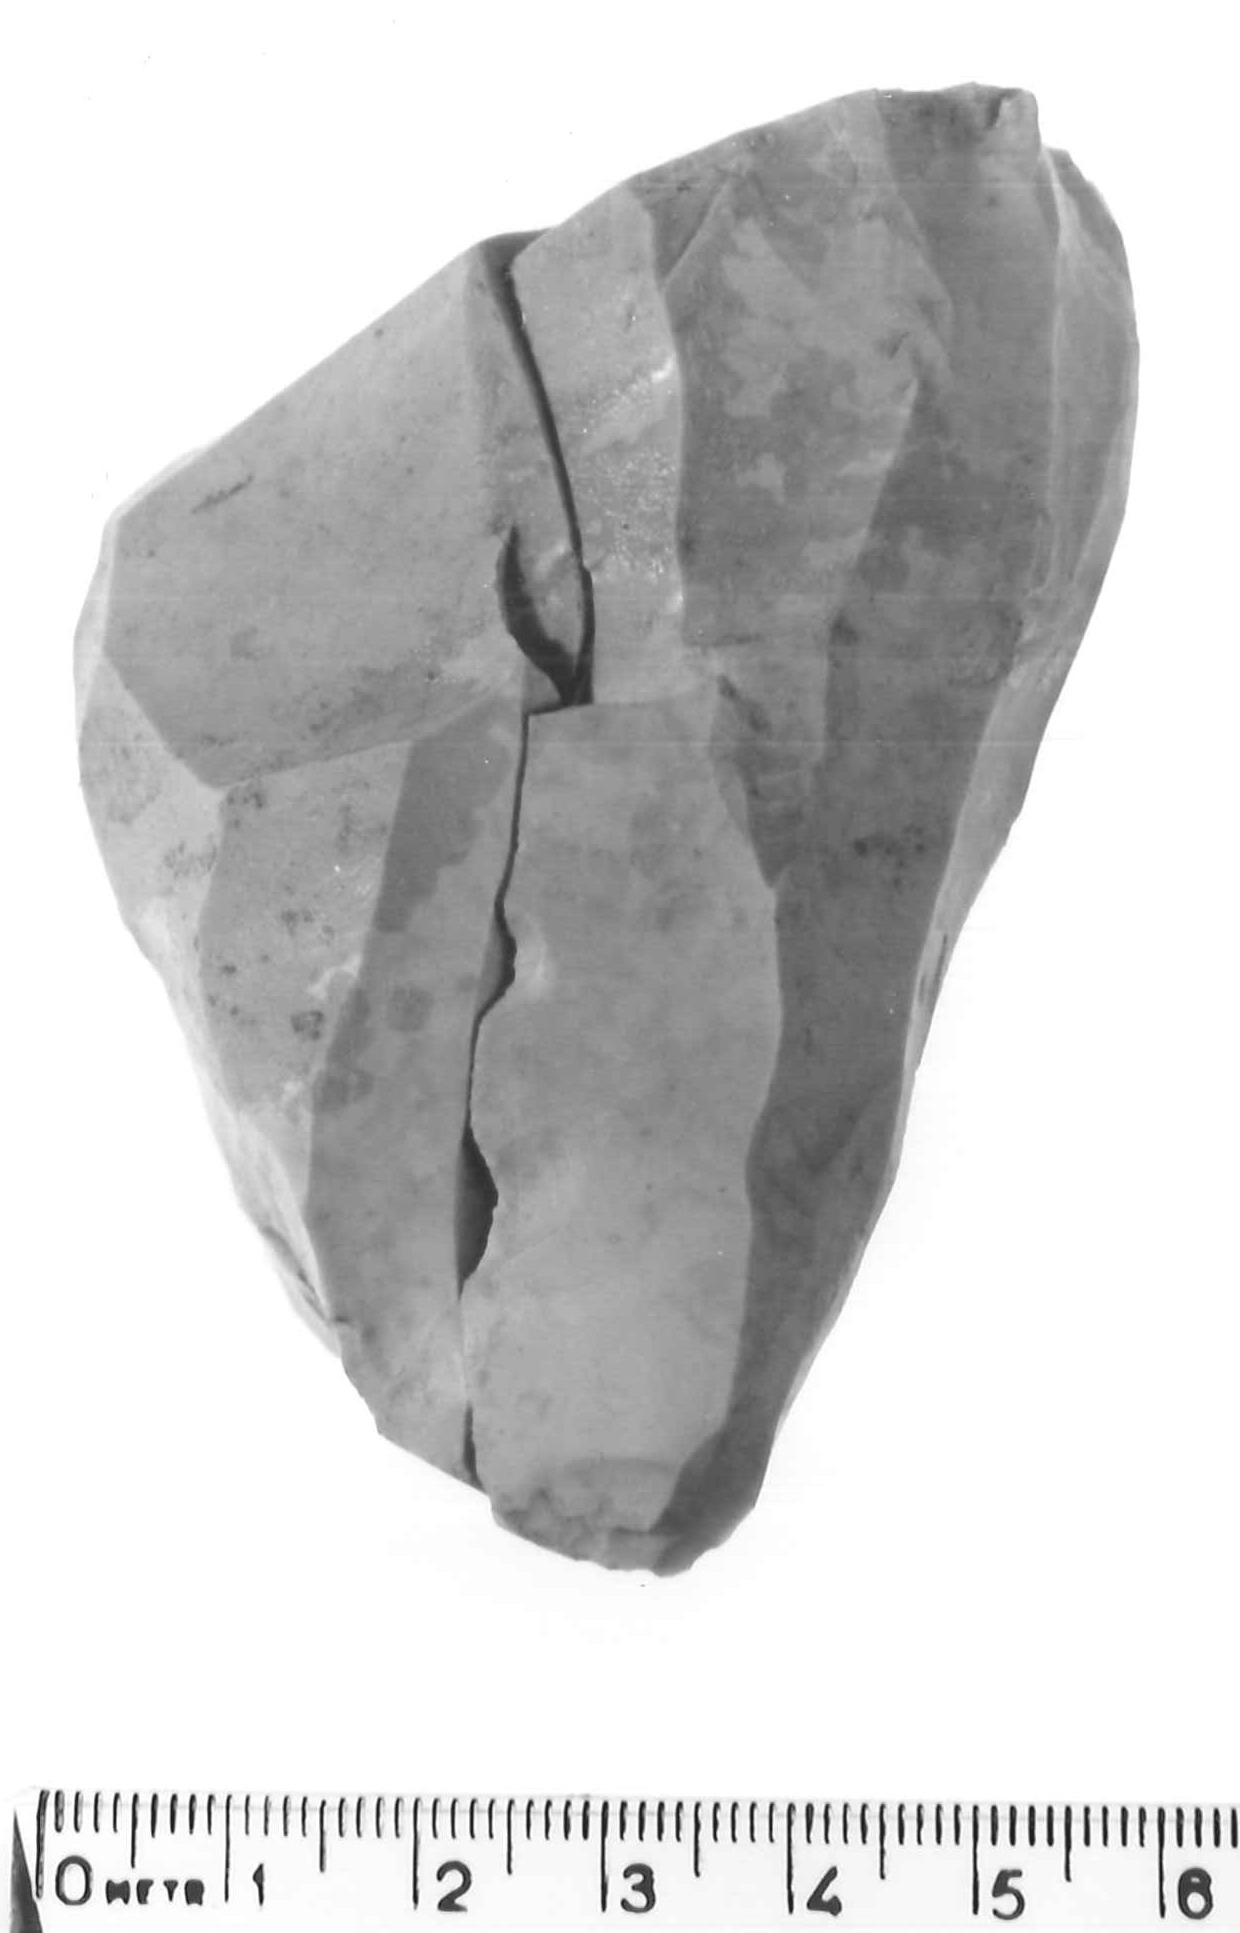 nucleo a due piani di percussione opposti - epigravettiano antico (paleolitico superiore)